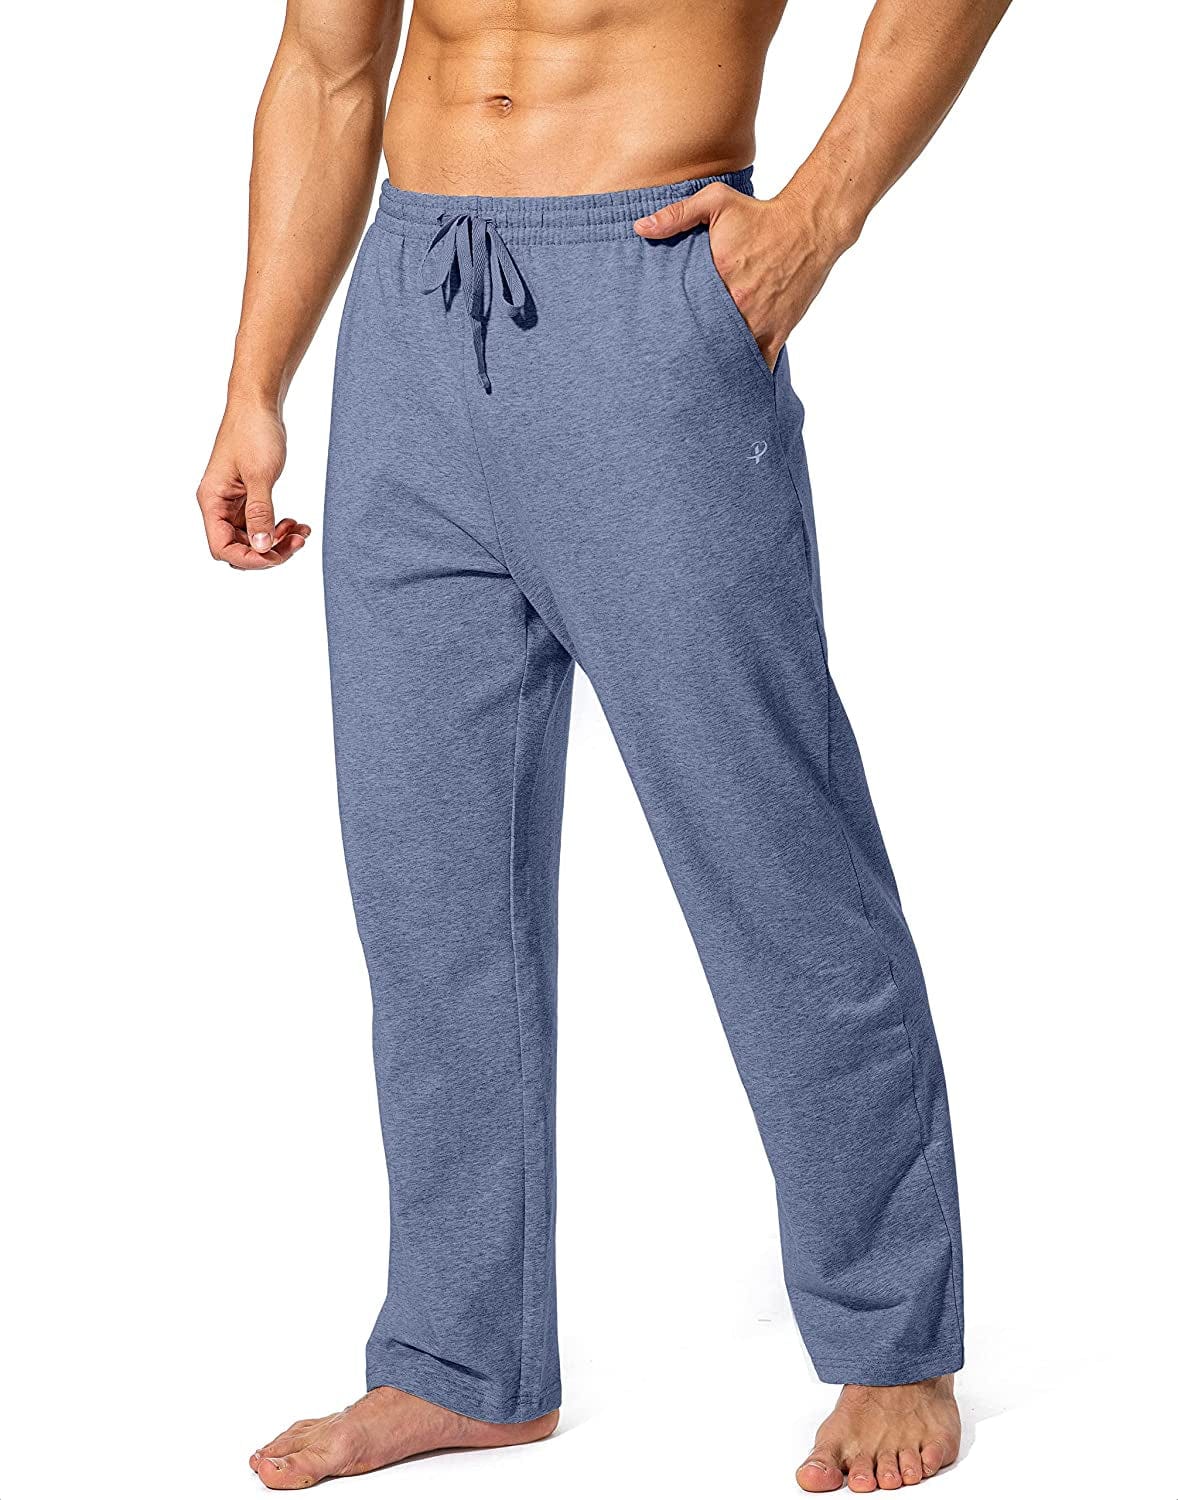 Cotton Yoga Pants (Unisex)